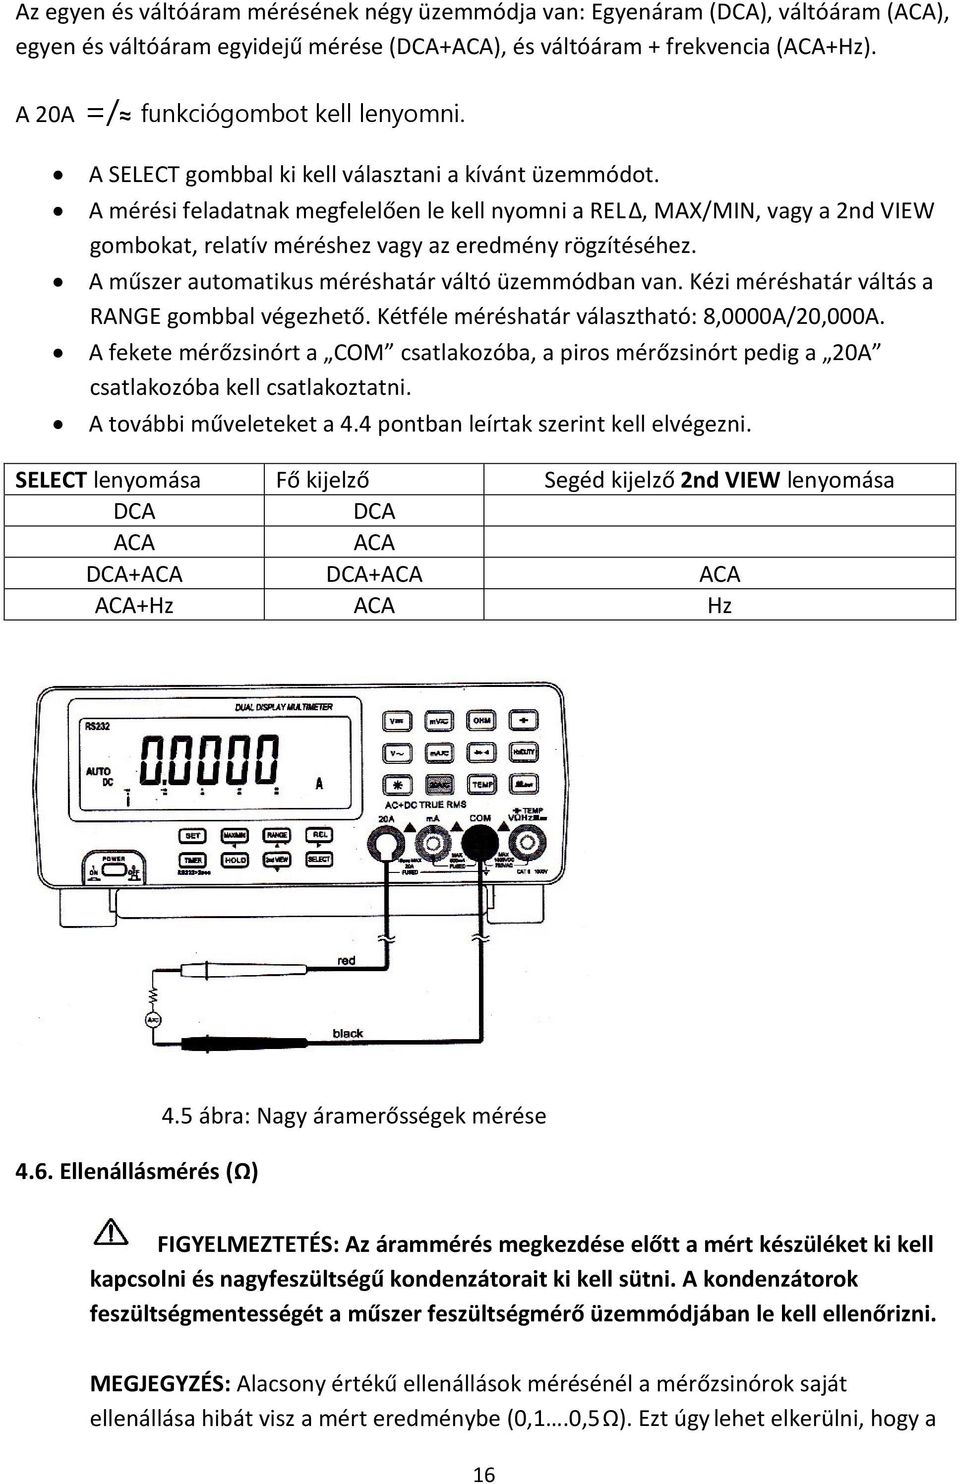 A mérési feladatnak megfelelően le kell nyomni a RELΔ, MAX/MIN, vagy a 2nd VIEW gombokat, relatív méréshez vagy az eredmény rögzítéséhez. A műszer automatikus méréshatár váltó üzemmódban van.